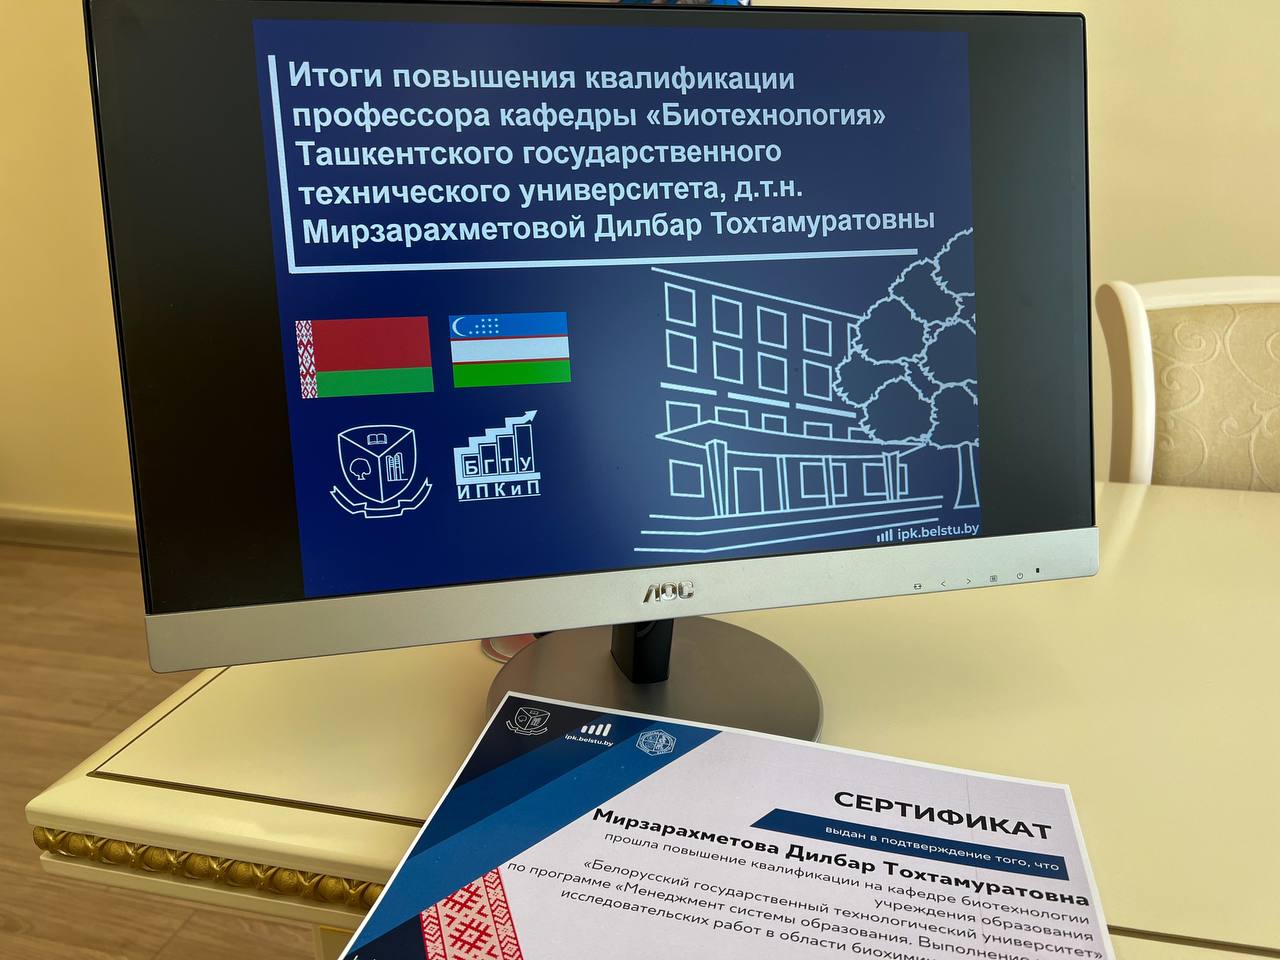 Развитие сотрудничества с Ташкентским государственным техническим университетом